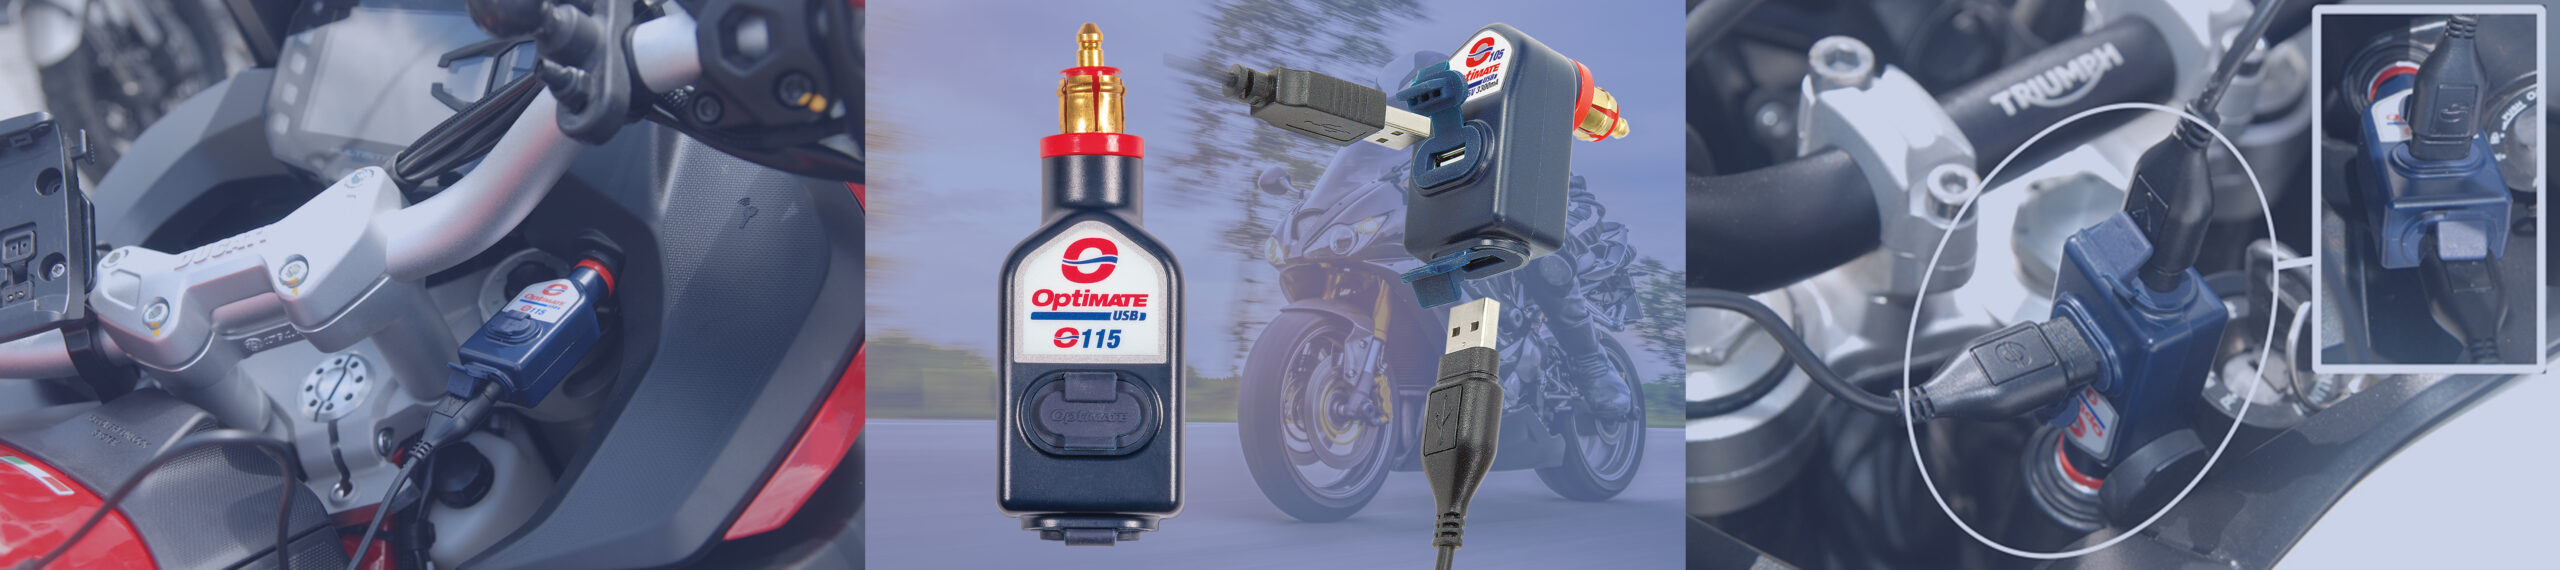 Chargeurs USB O-115 et O-105 OptiMate branchés sur les prises de moto